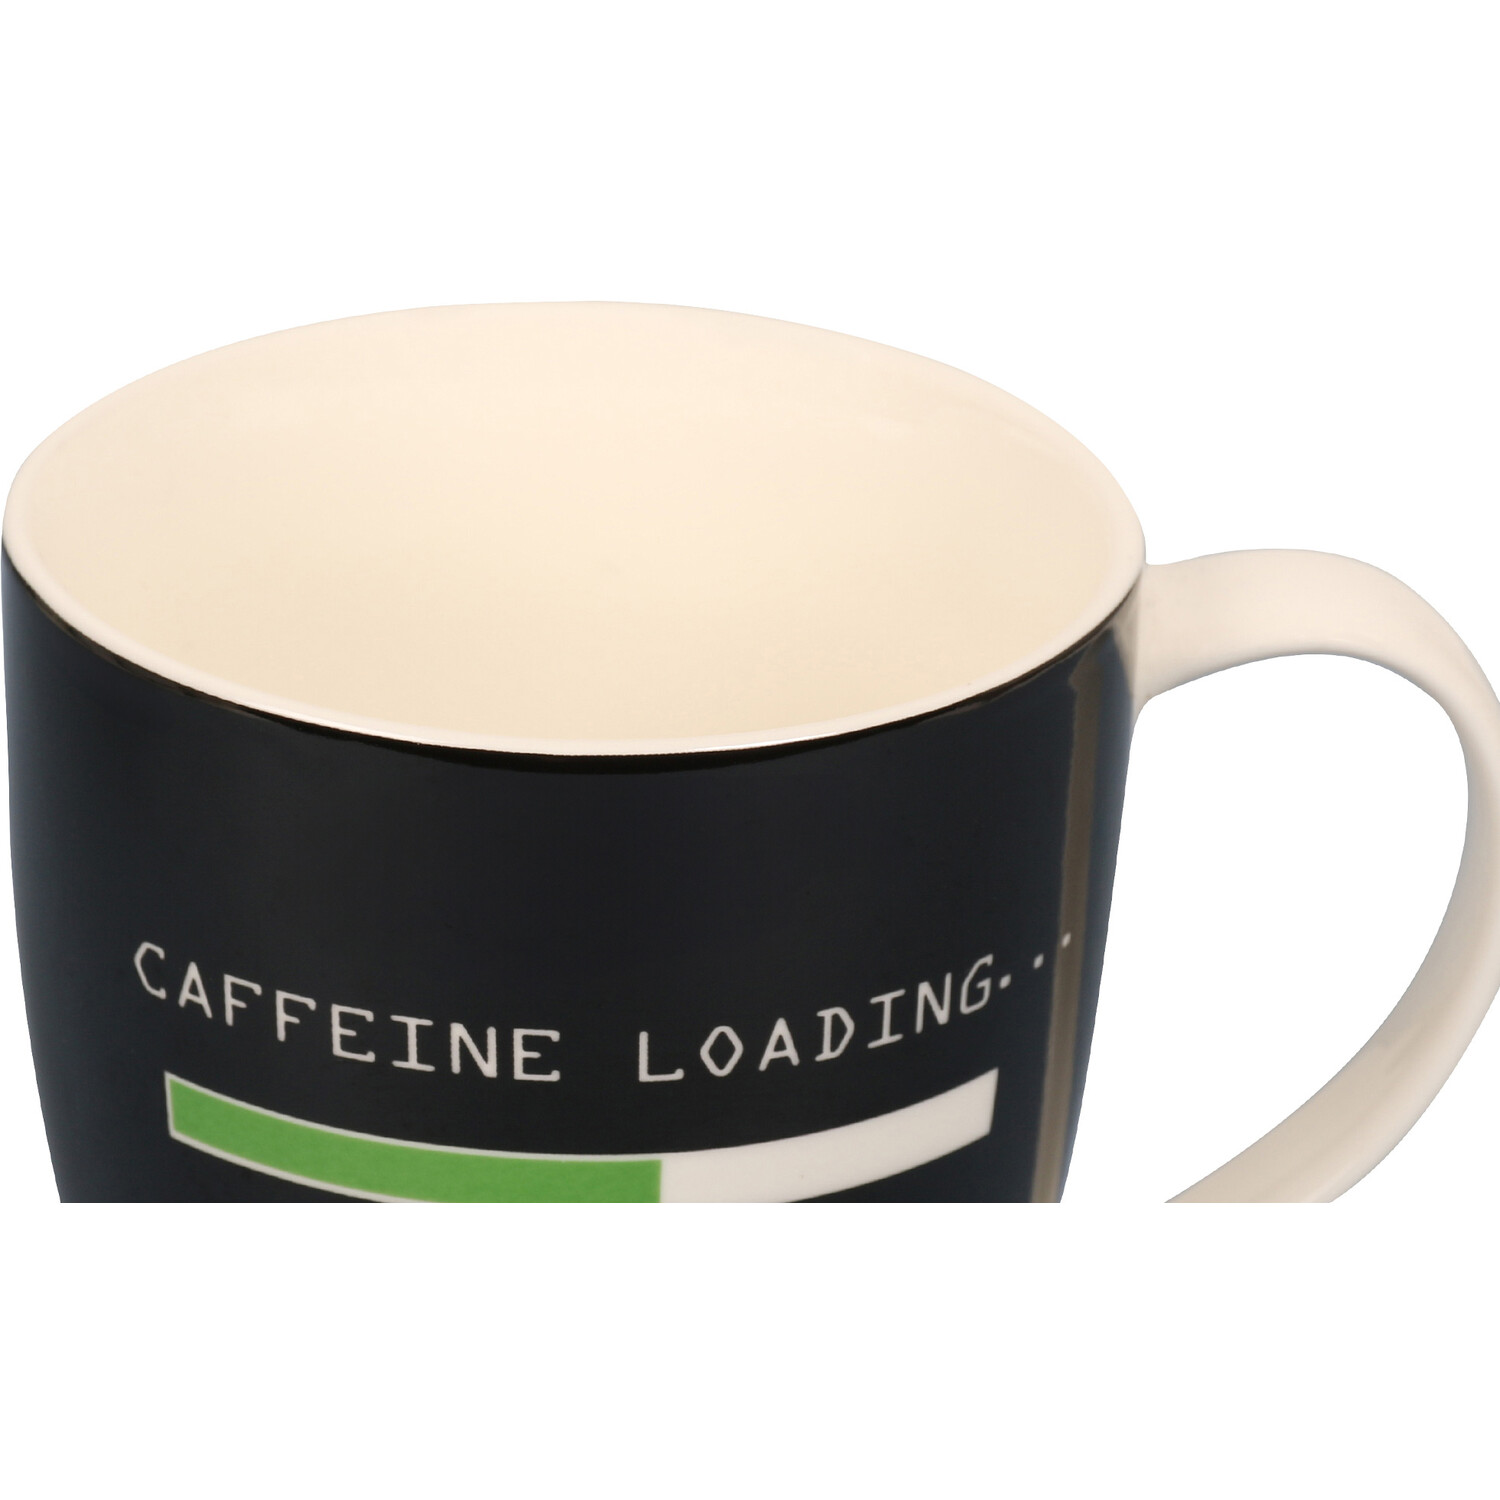 Caffeine Loading Jumbo Mug - Black Image 3